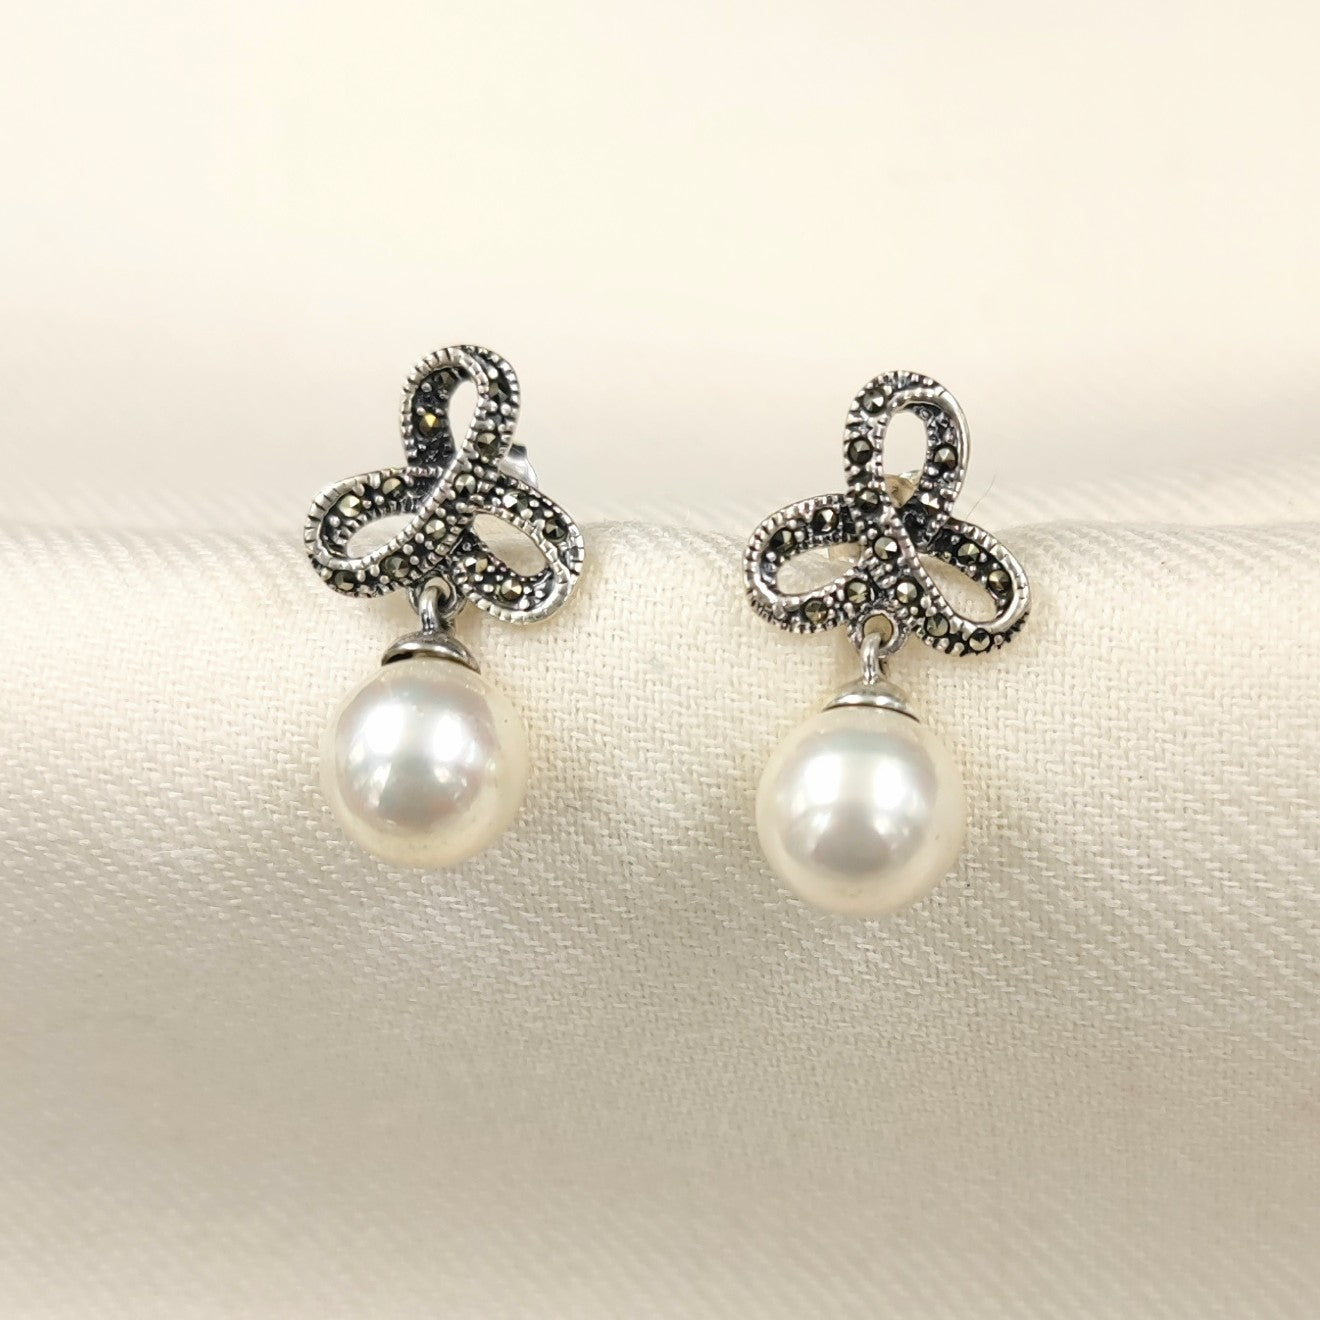 Silver Jewelry Earrings by Jauhri 92.5 Silver - Ribbon Pearl Drop Earrings